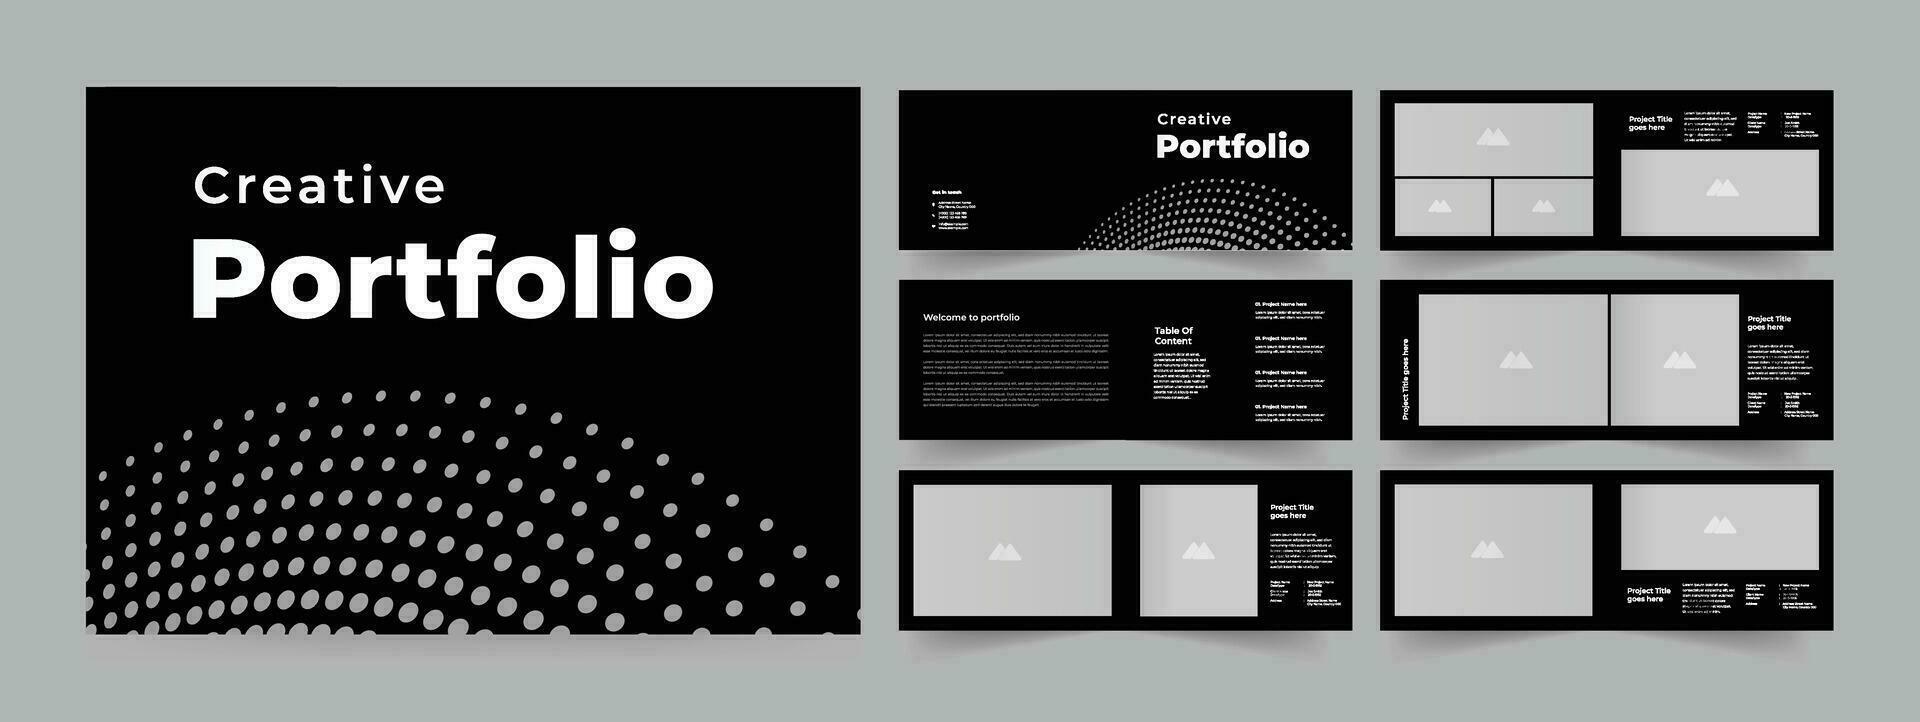 Portfolio Architecture Portfolio Layout Design vector